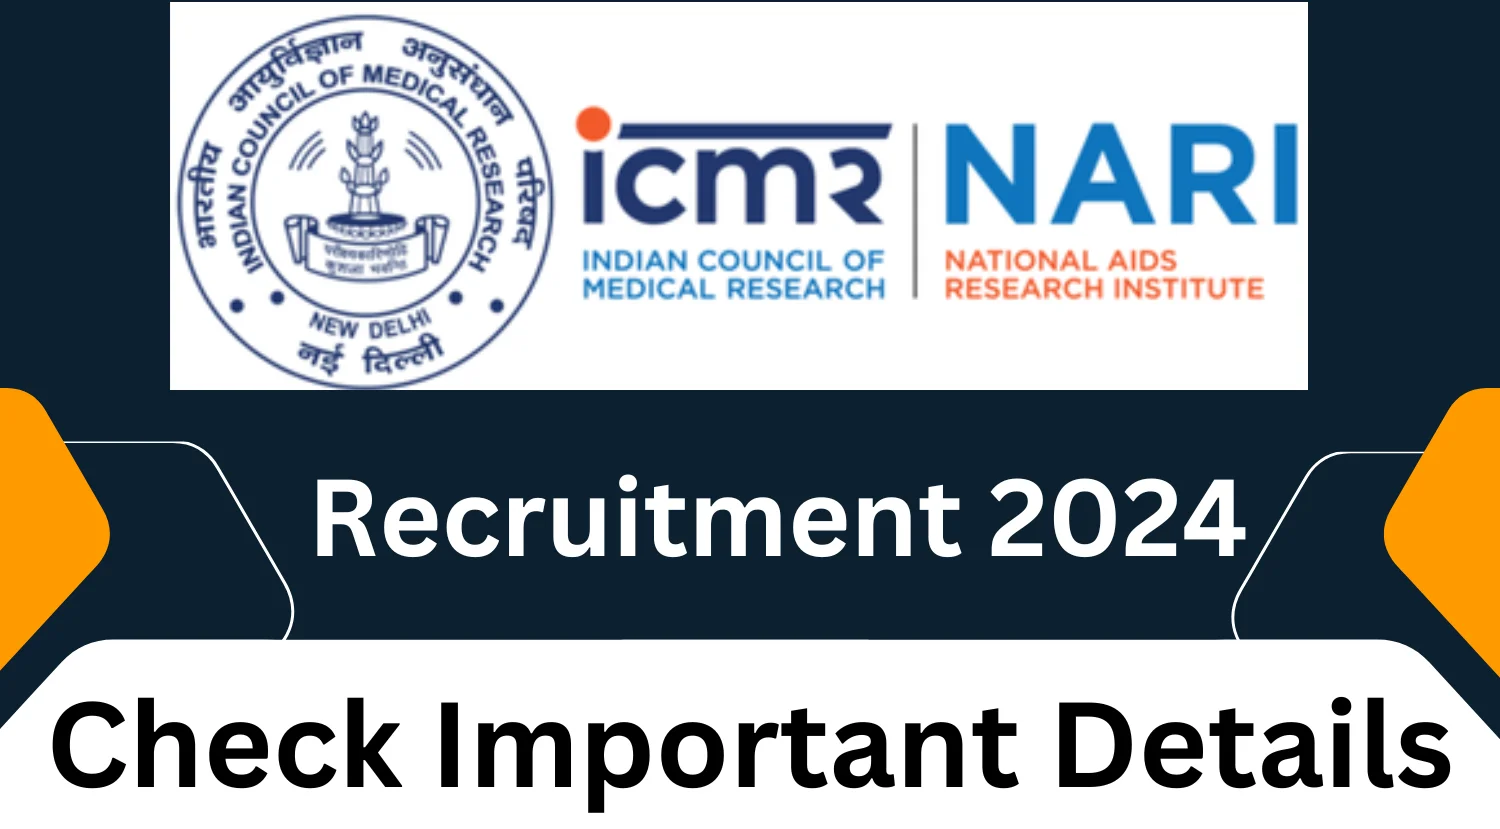 ICMR-NARI Recruitment 2024